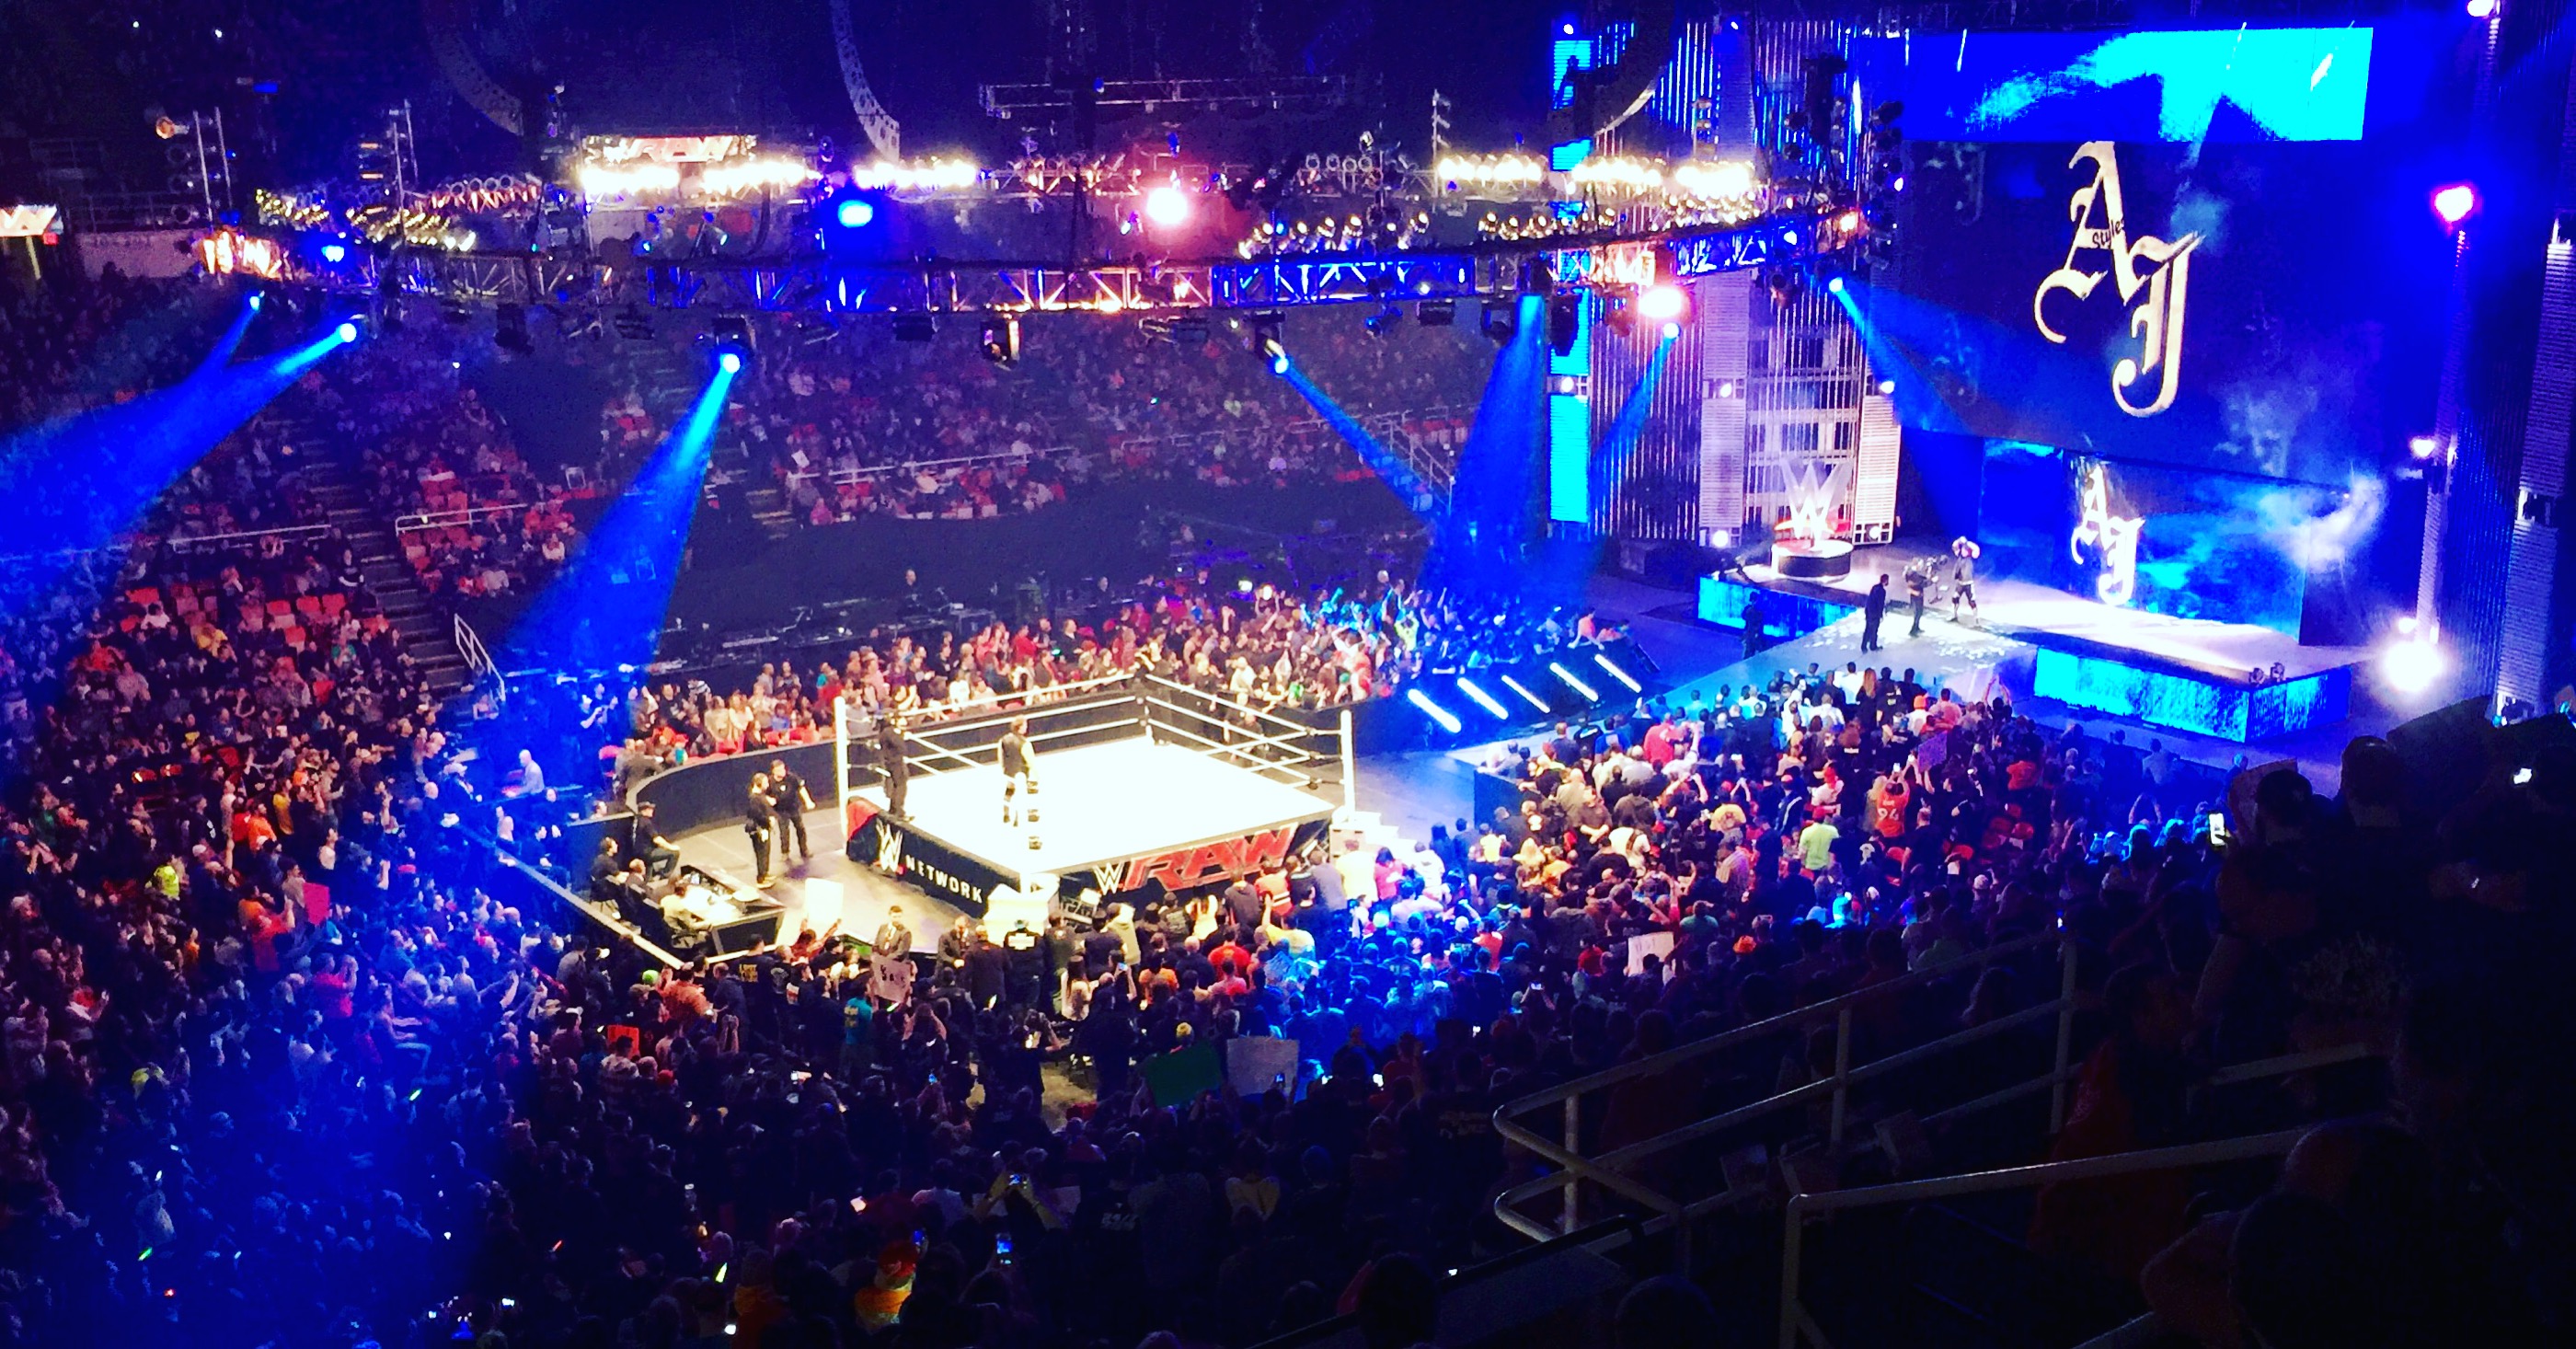 WWE 'Monday Night Raw' at Joe Louis Arena